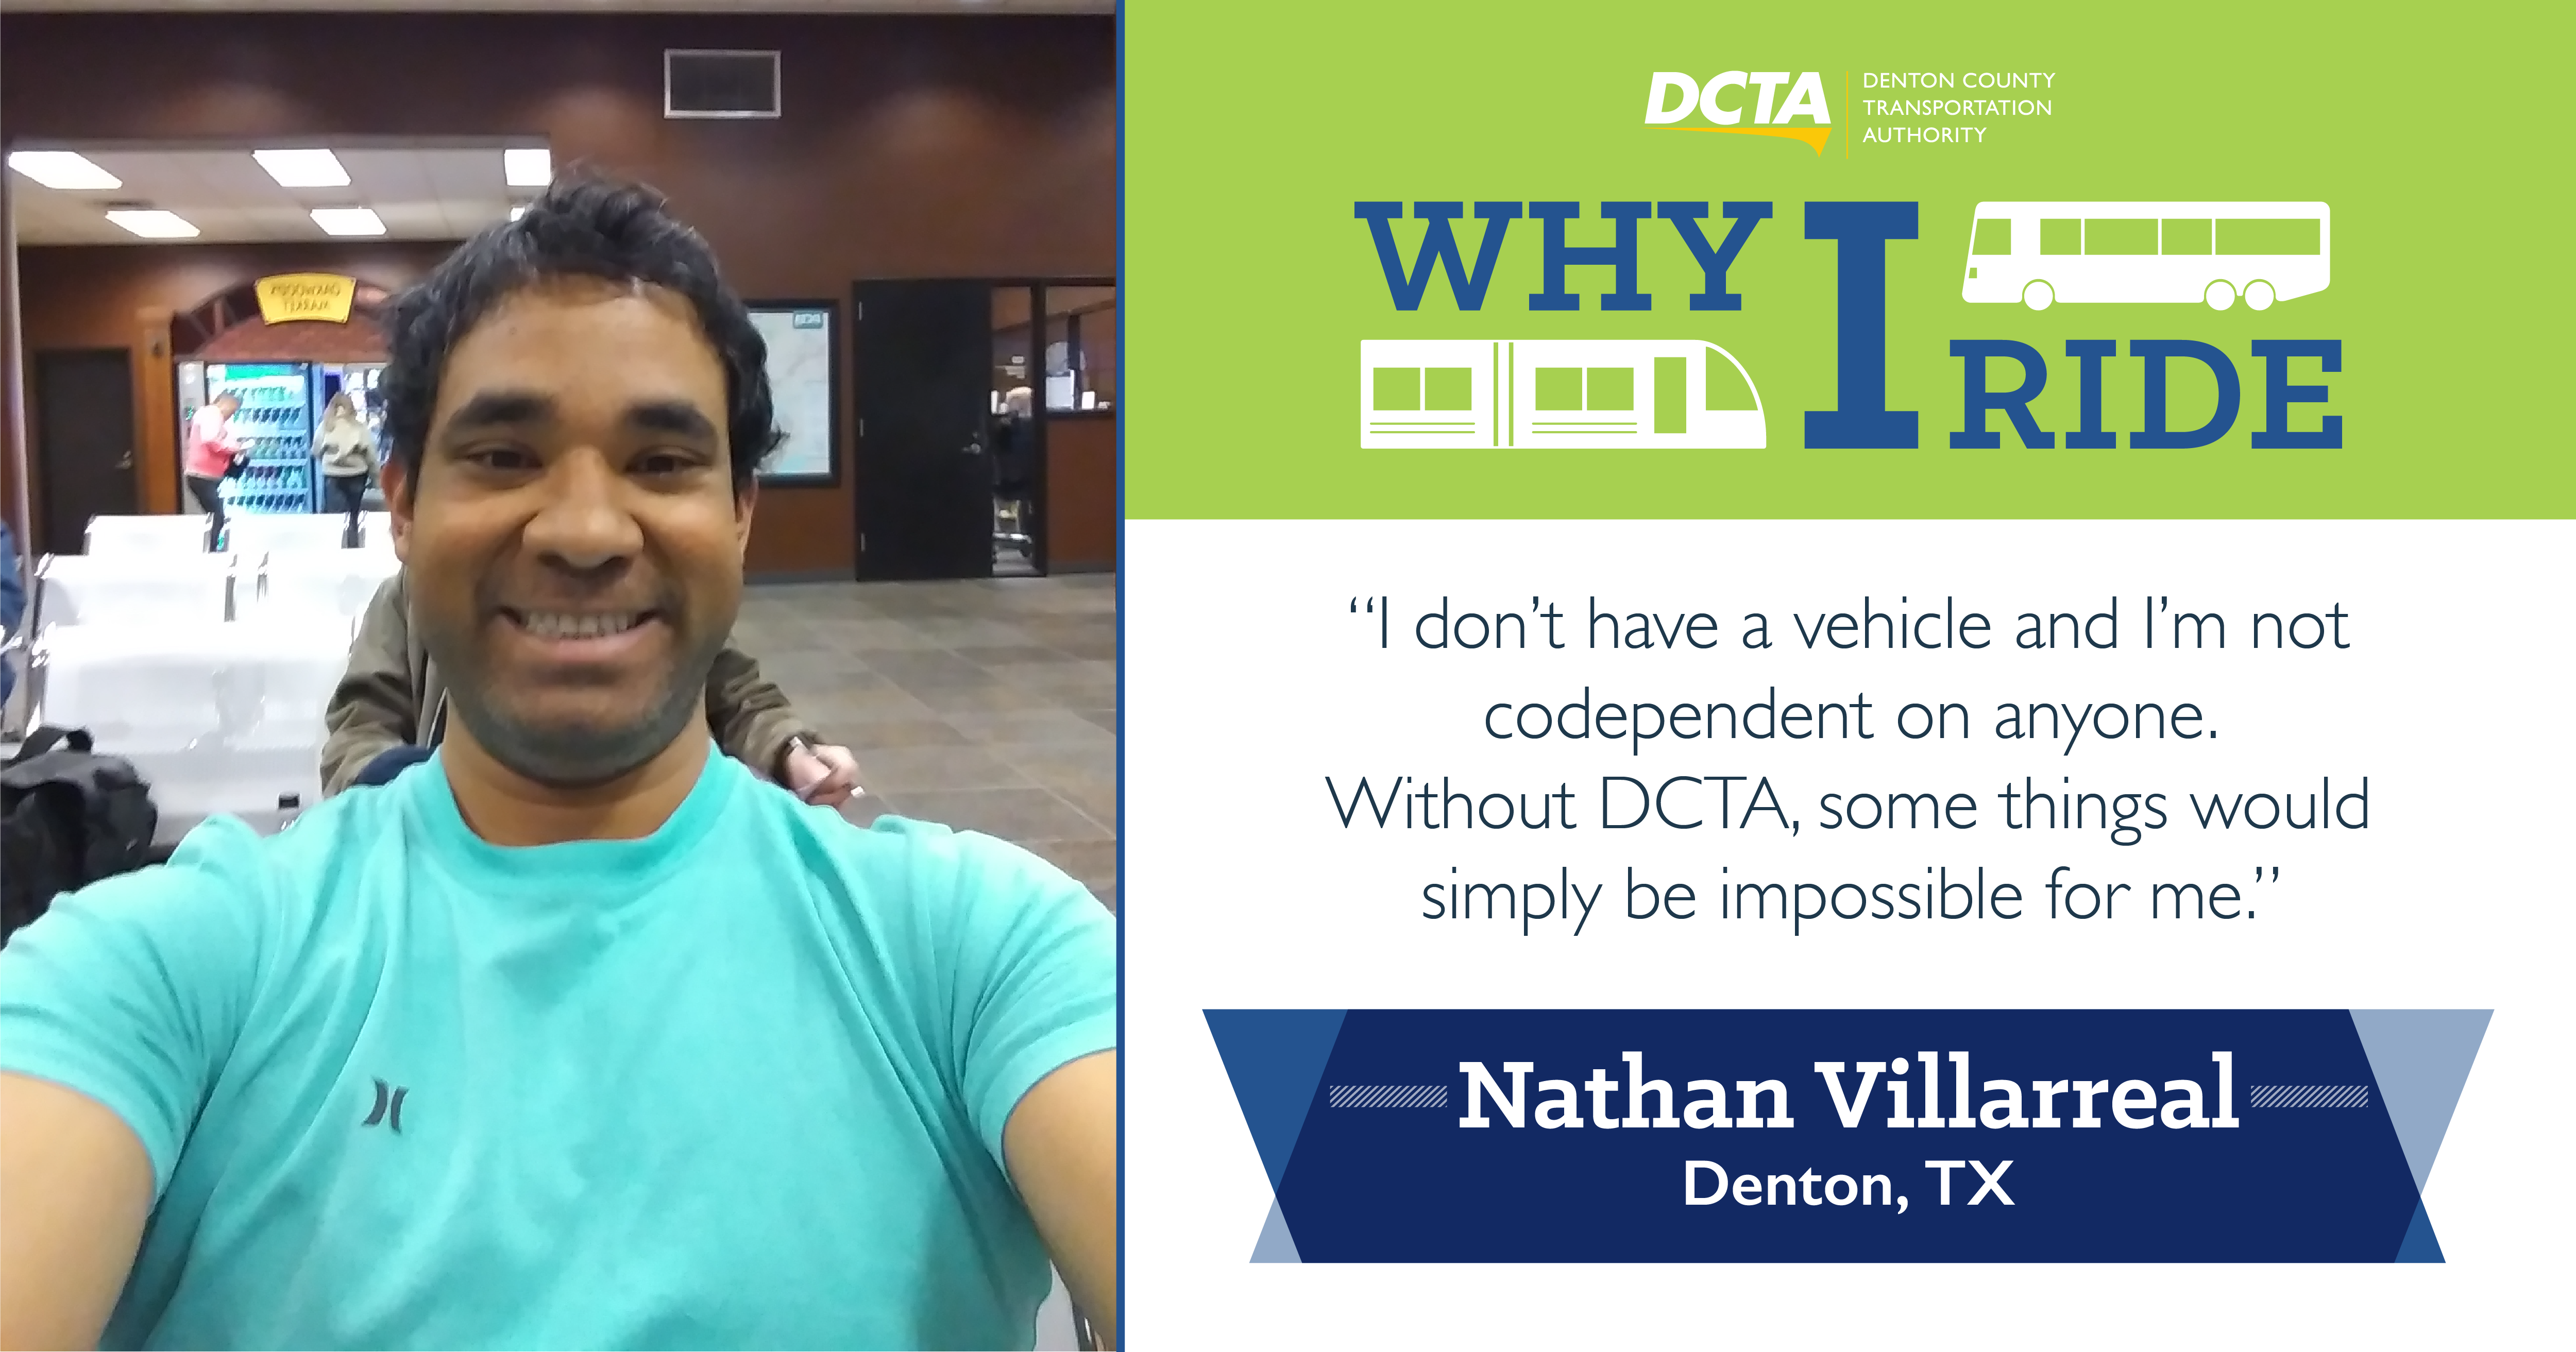 #WhyIRideDCTA – Nathan Villarreal